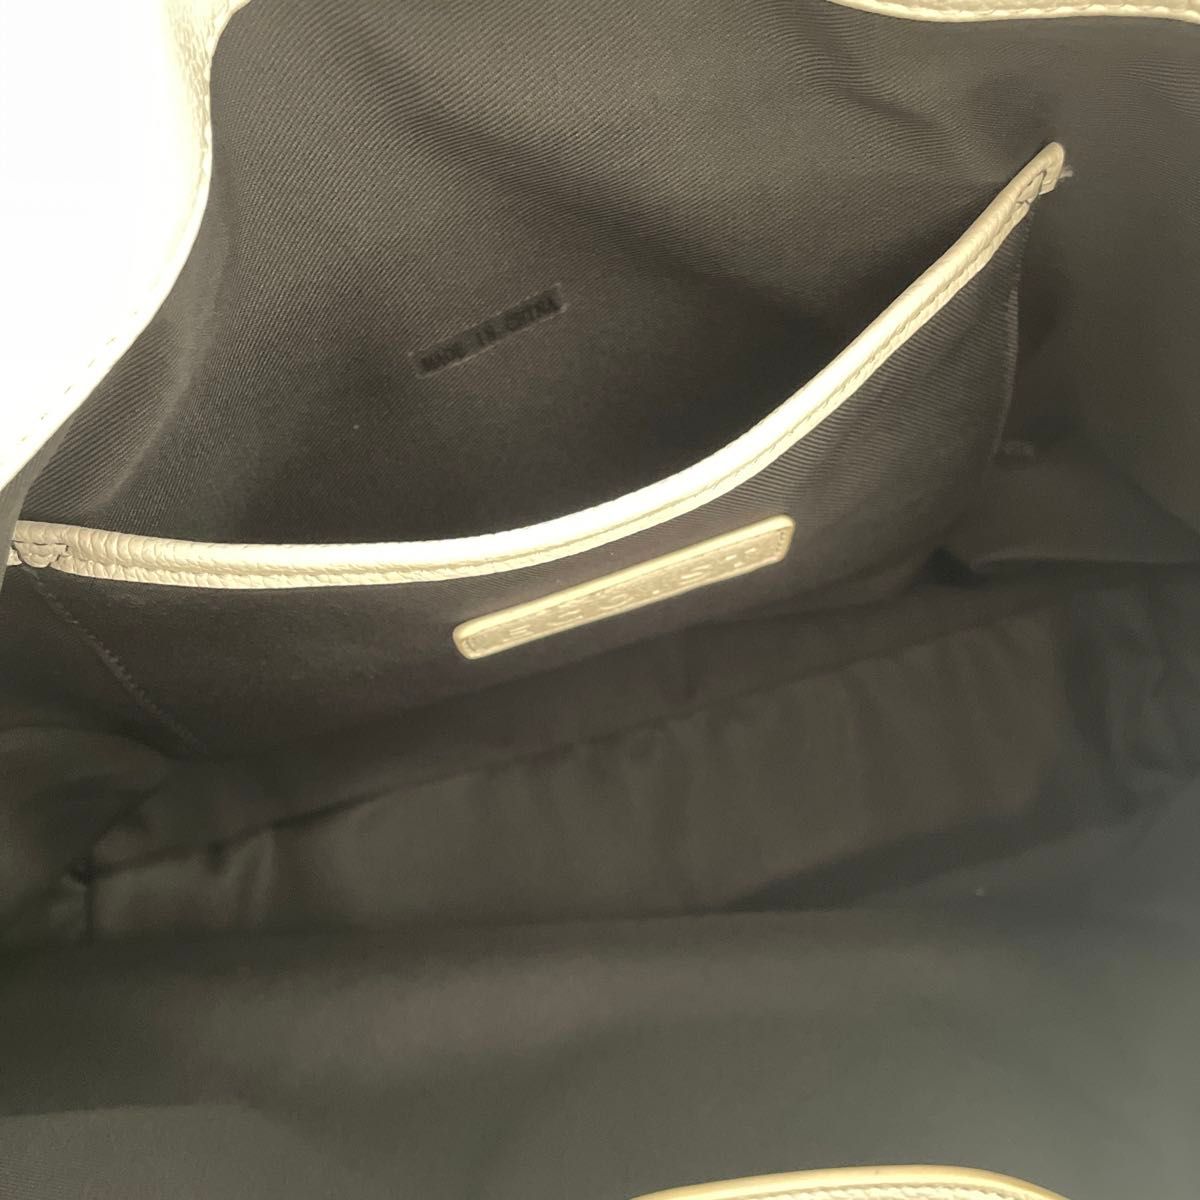 EGOIST トートバッグ エスニック柄 ロゴ 大容量 マザーズバッグ マザーバッグ 旅行バッグ オフィスバッグ